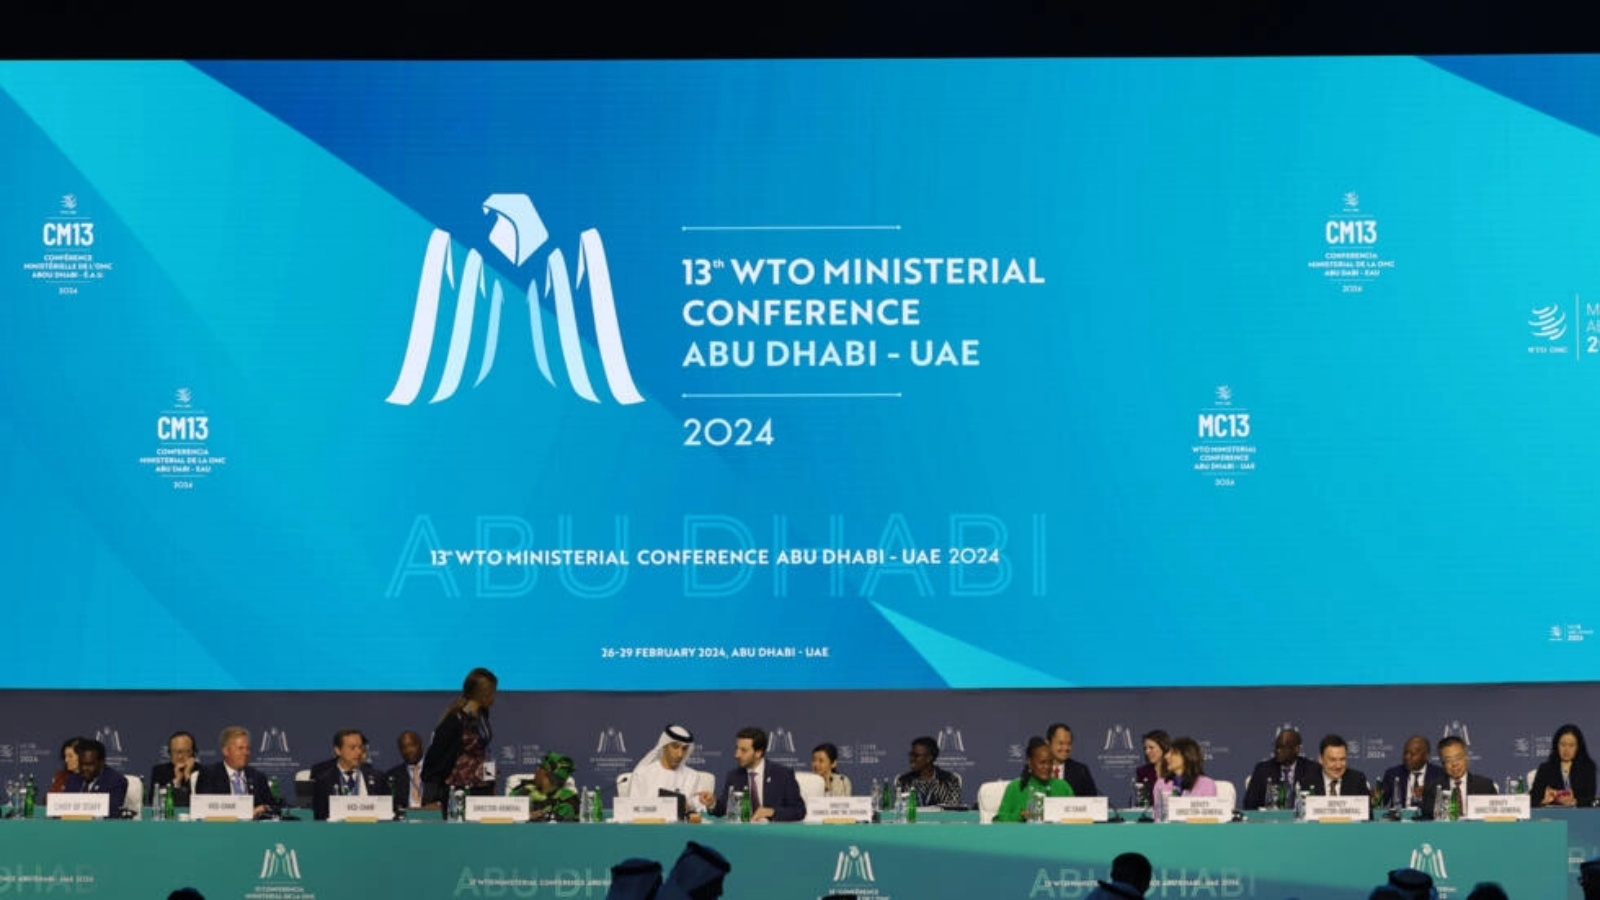 مندوبون من دول عدة يحضرون المؤتمر الوزاري الثالث عشر لمنظمة التجارة العالمية في أبوظبي في 26 شباط (فبراير) 2024 